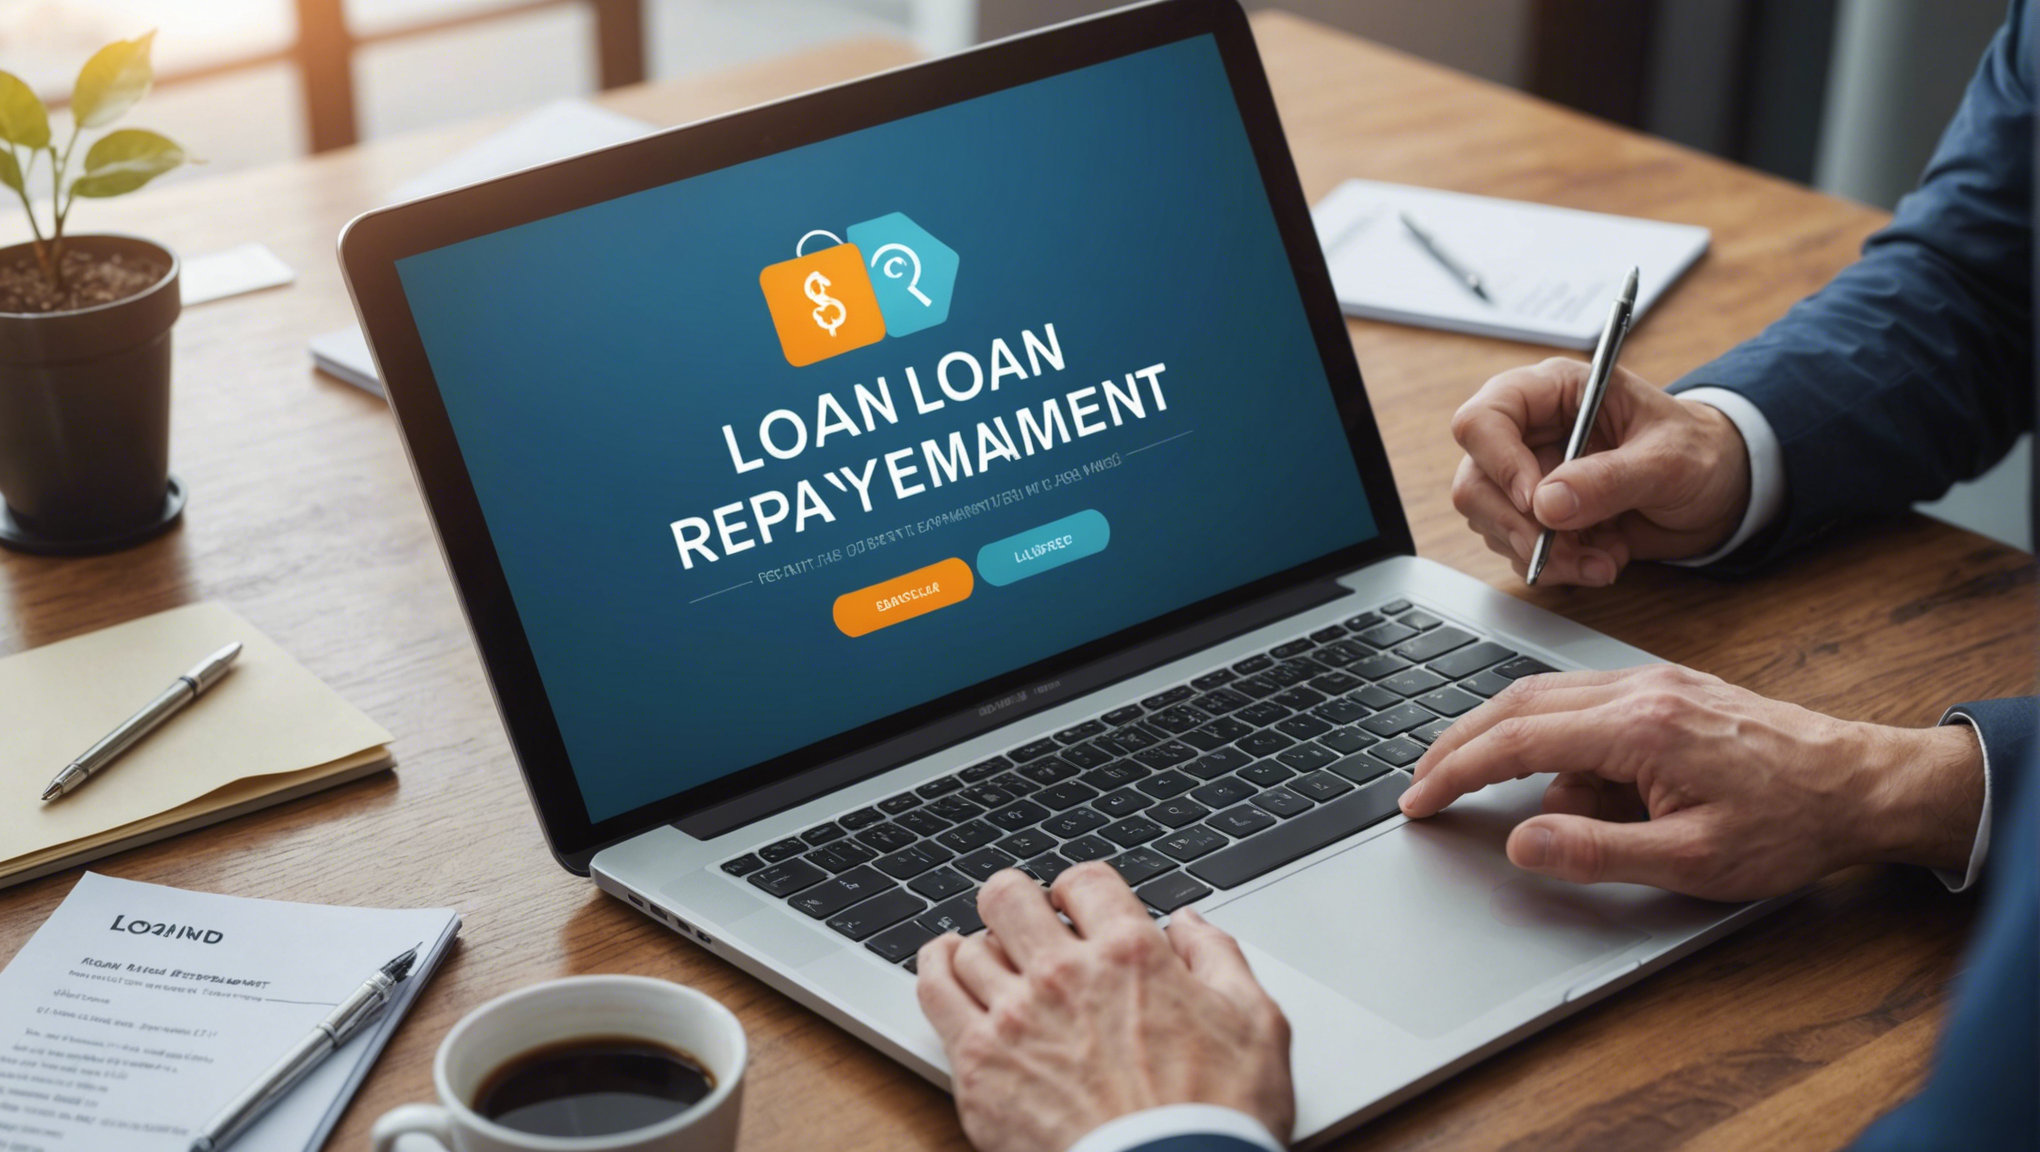 découvrez comment fonctionne le remboursement d'un emprunt et comprenez les mécanismes de remboursement de prêt de manière claire et détaillée.